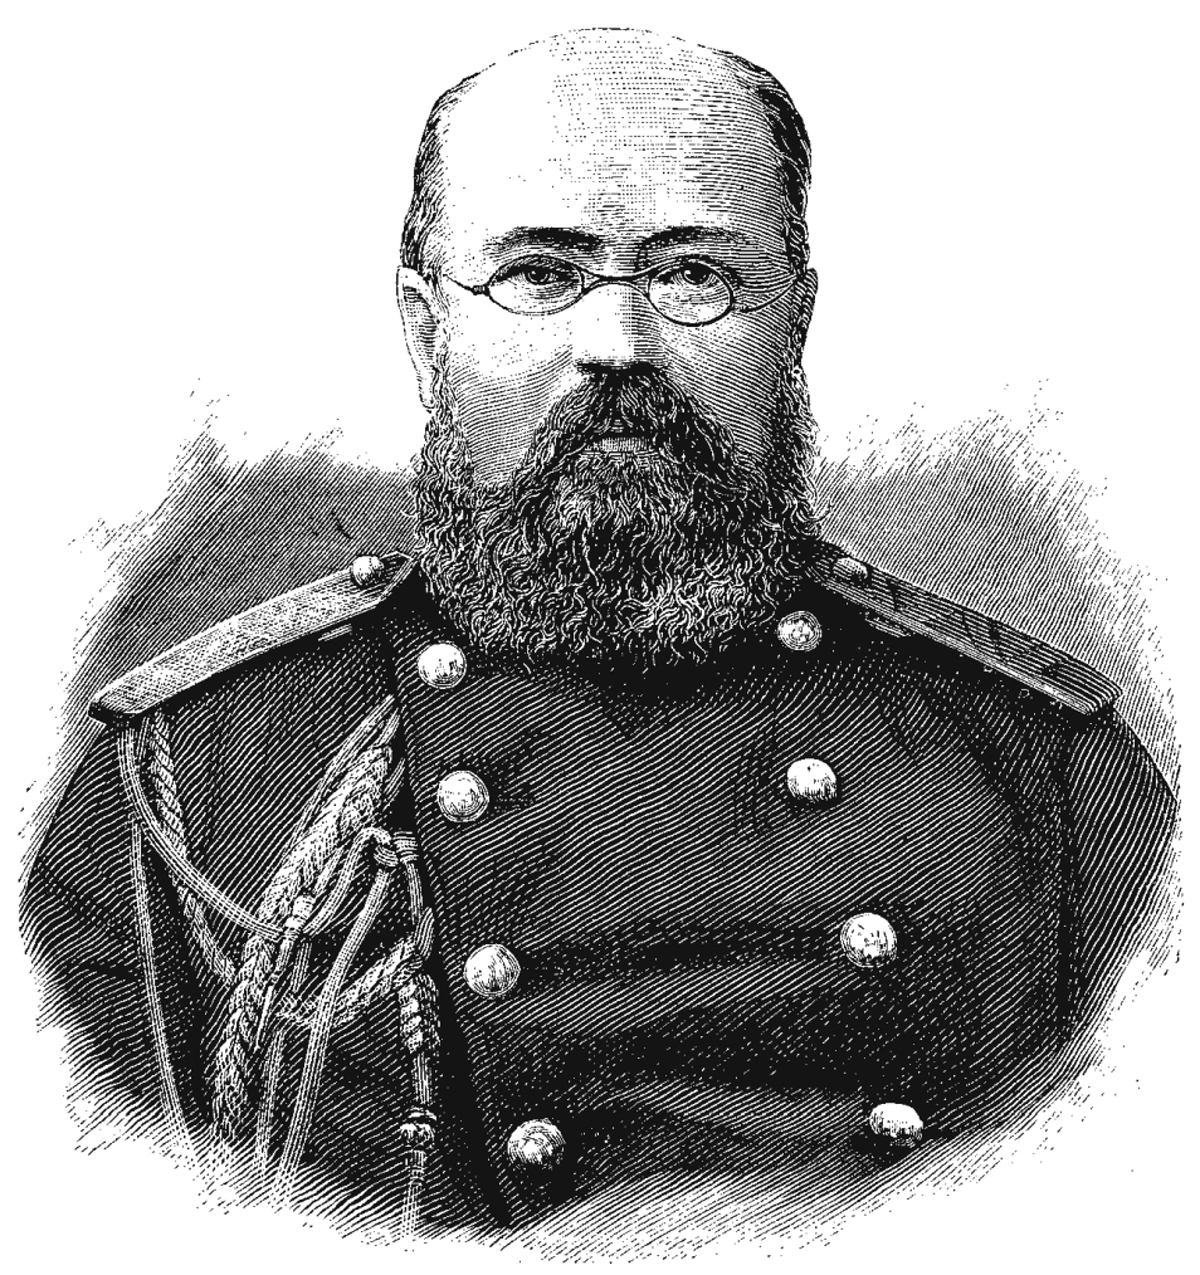 Генерал Александр Виссарионович Комаров. Изображение в журнале «Наша Нива». 1885 год.